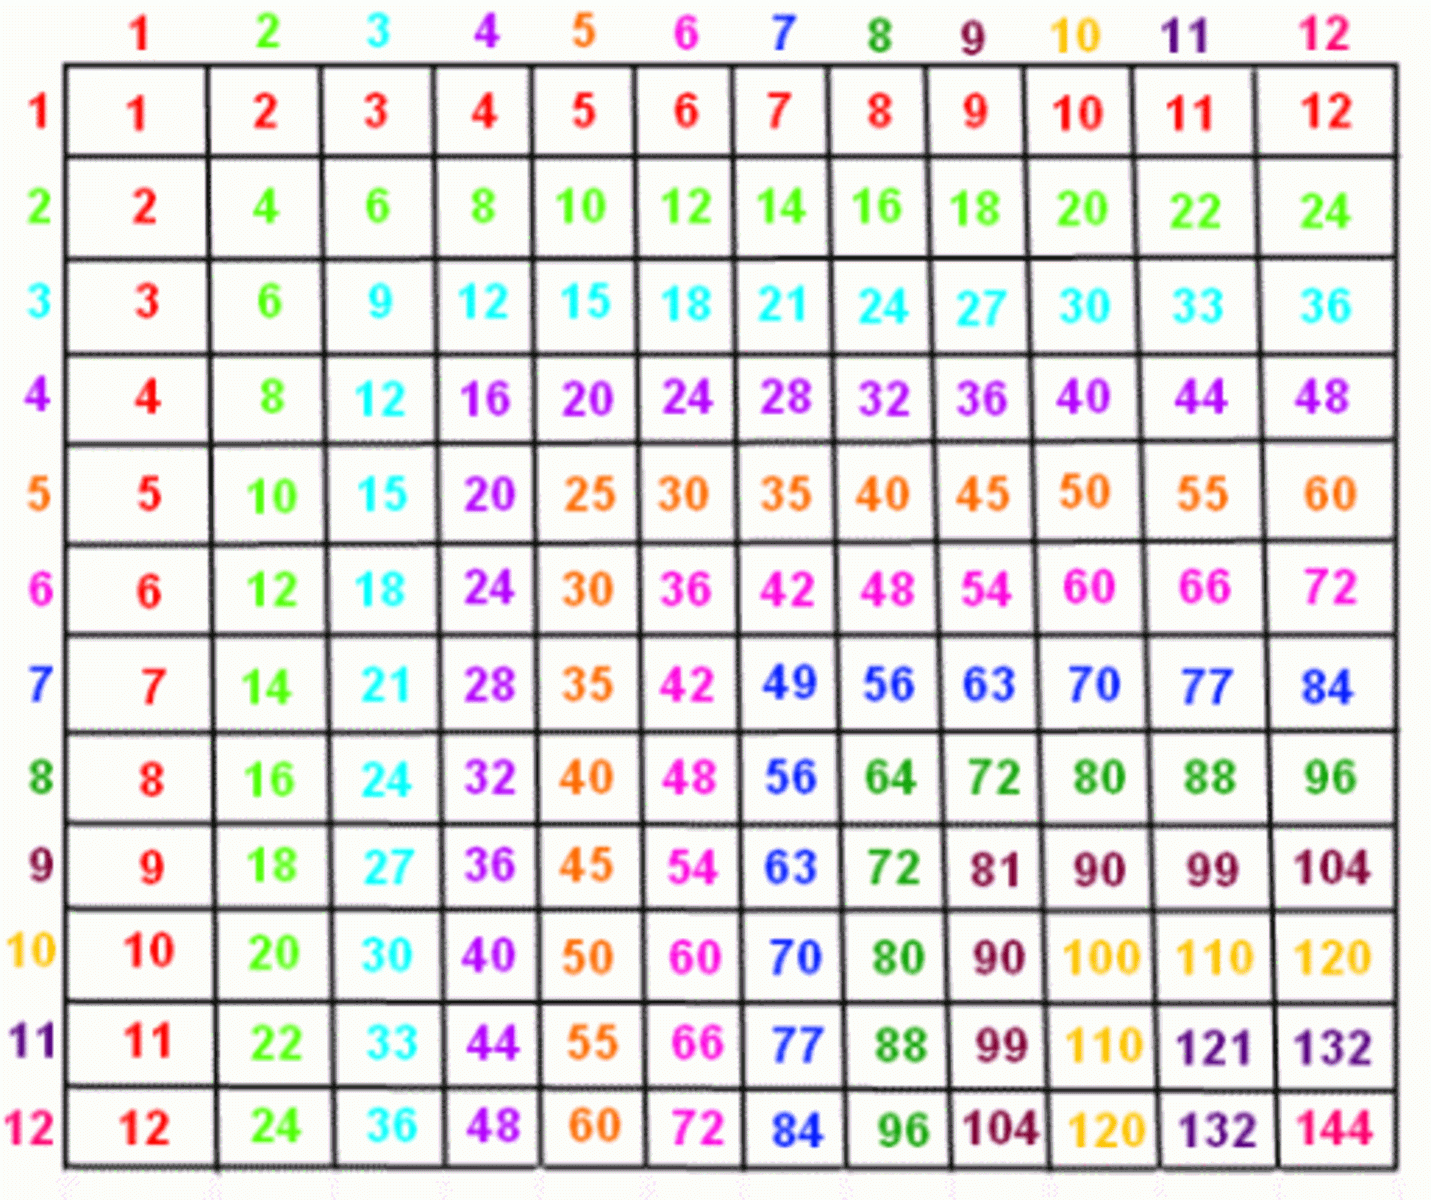 hundred multiplication chart